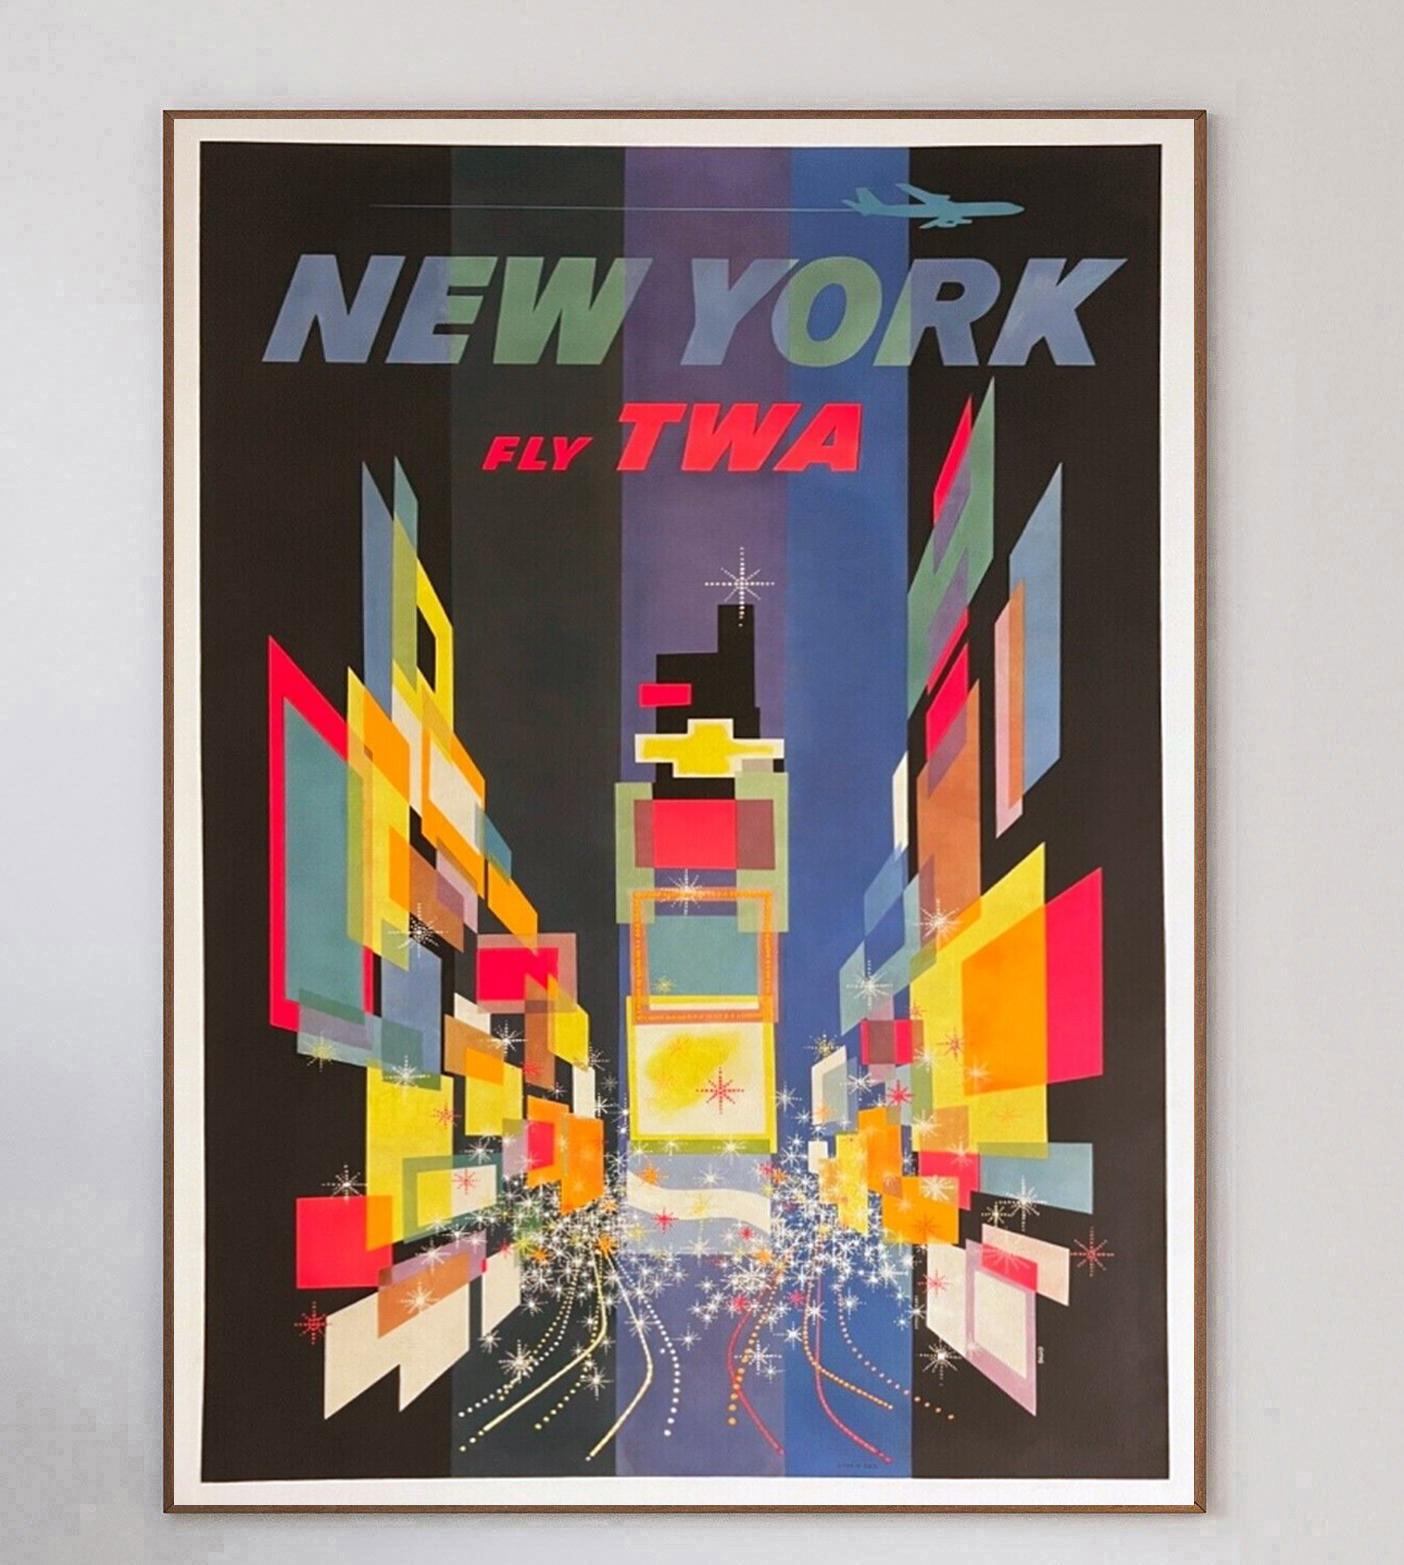 Dieses Plakat wurde 1960 für die Trans World Airlines von Howard Hughes erstellt, die damit für ihre Routen nach New York warb. Dieses von dem einflussreichen amerikanischen Künstler David Klein illustrierte Design zeigt ein wunderbar stilisiertes